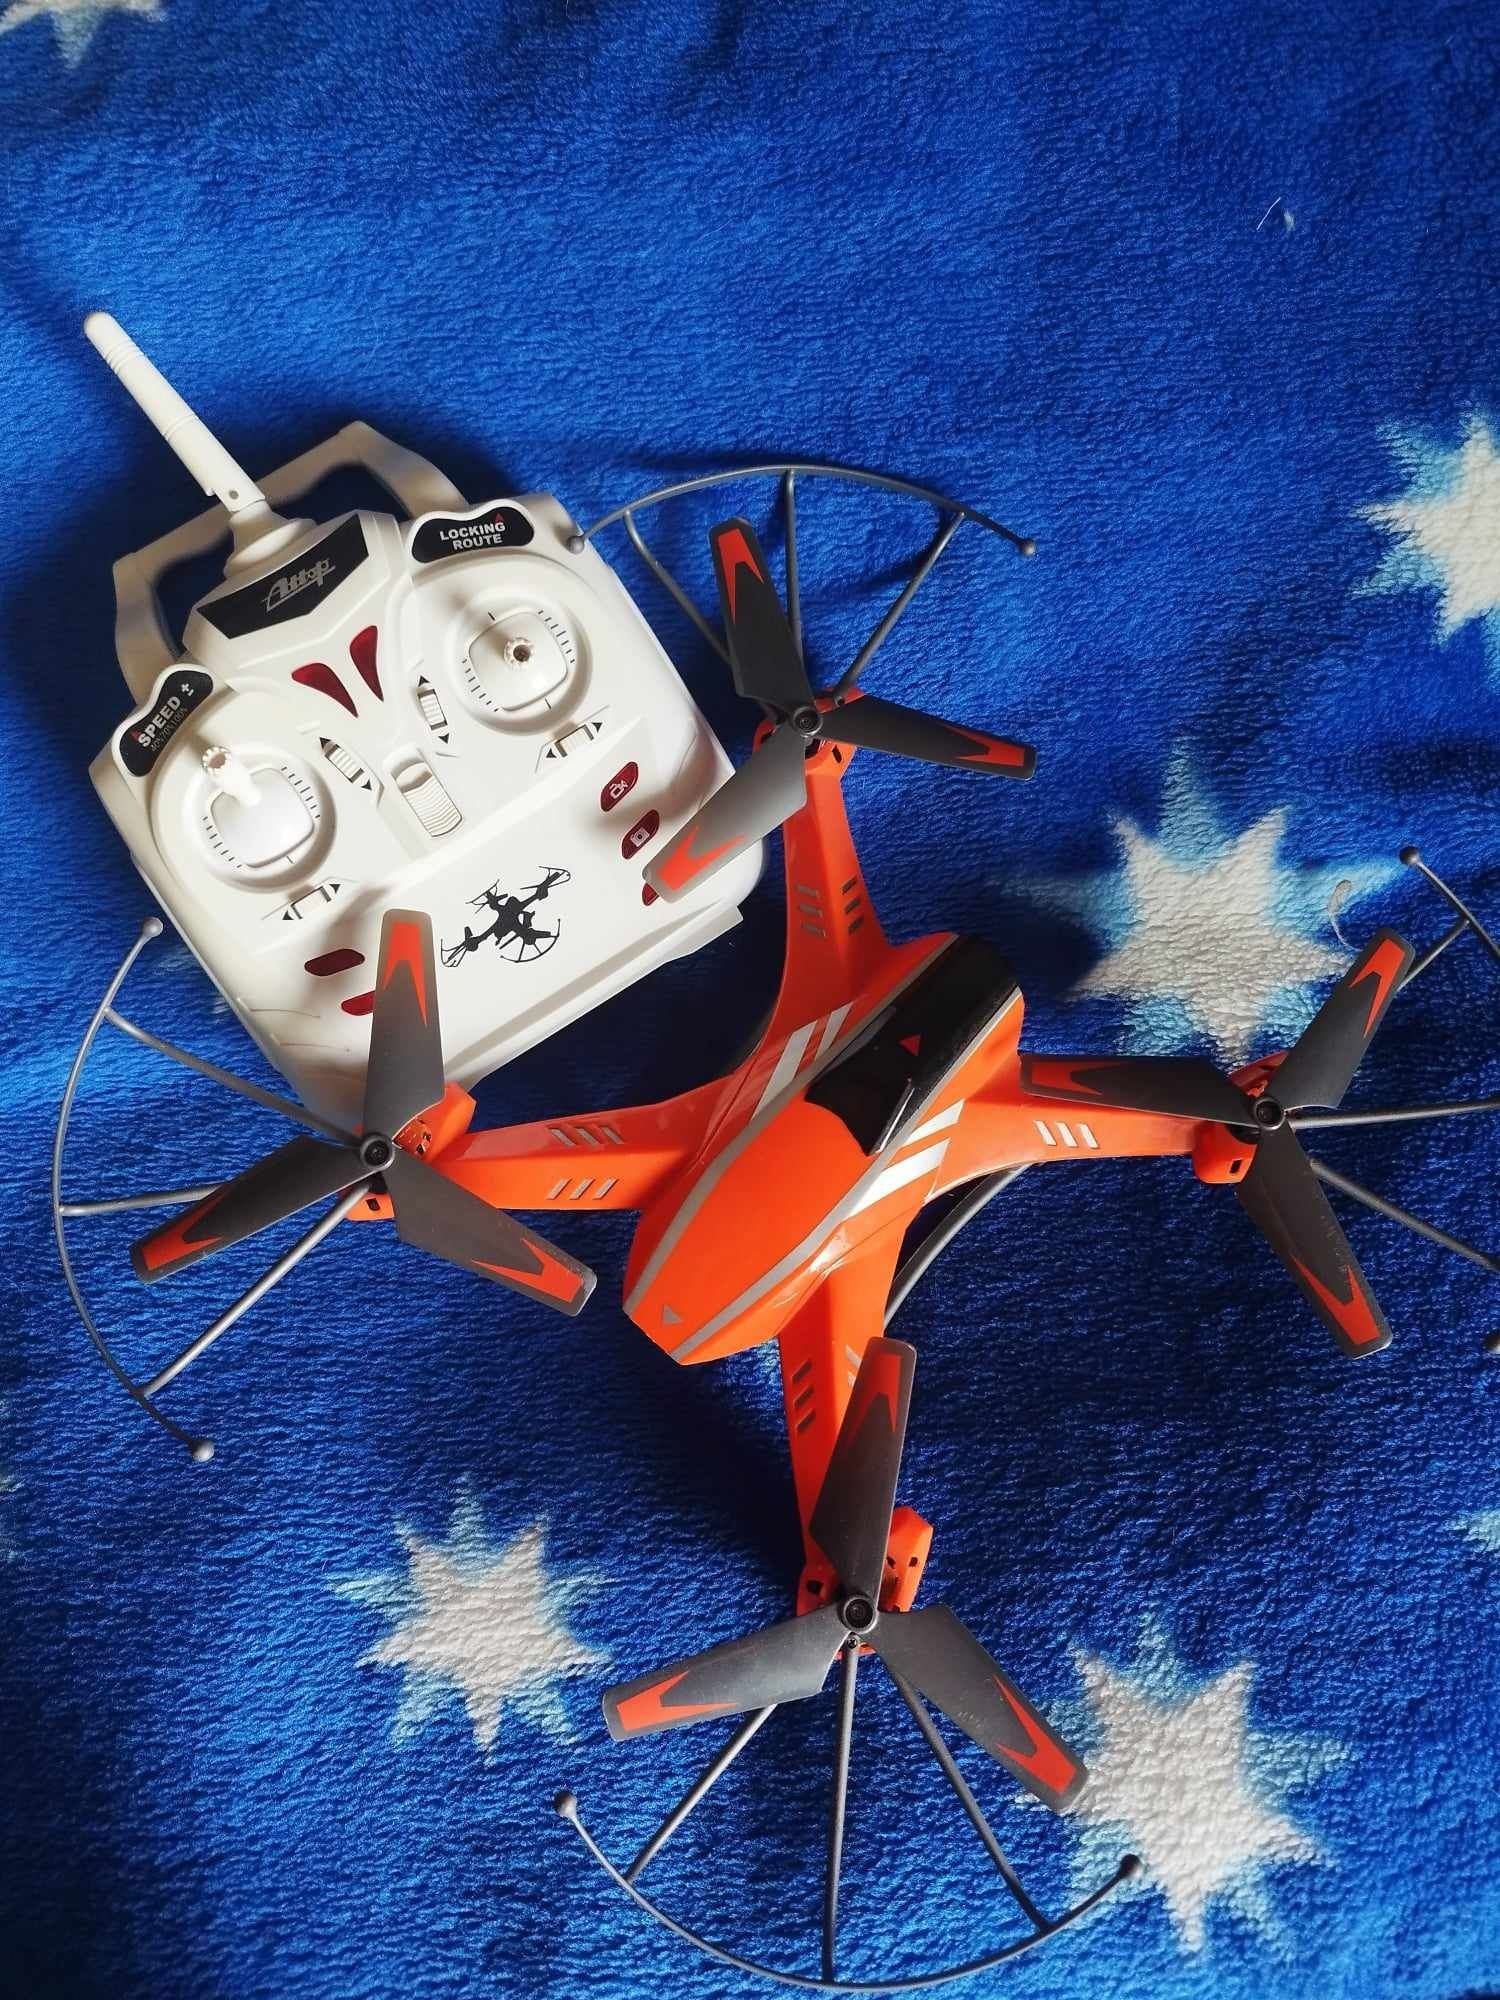 ATTOP Cyclone Quadocopter dron z kamerą A8C